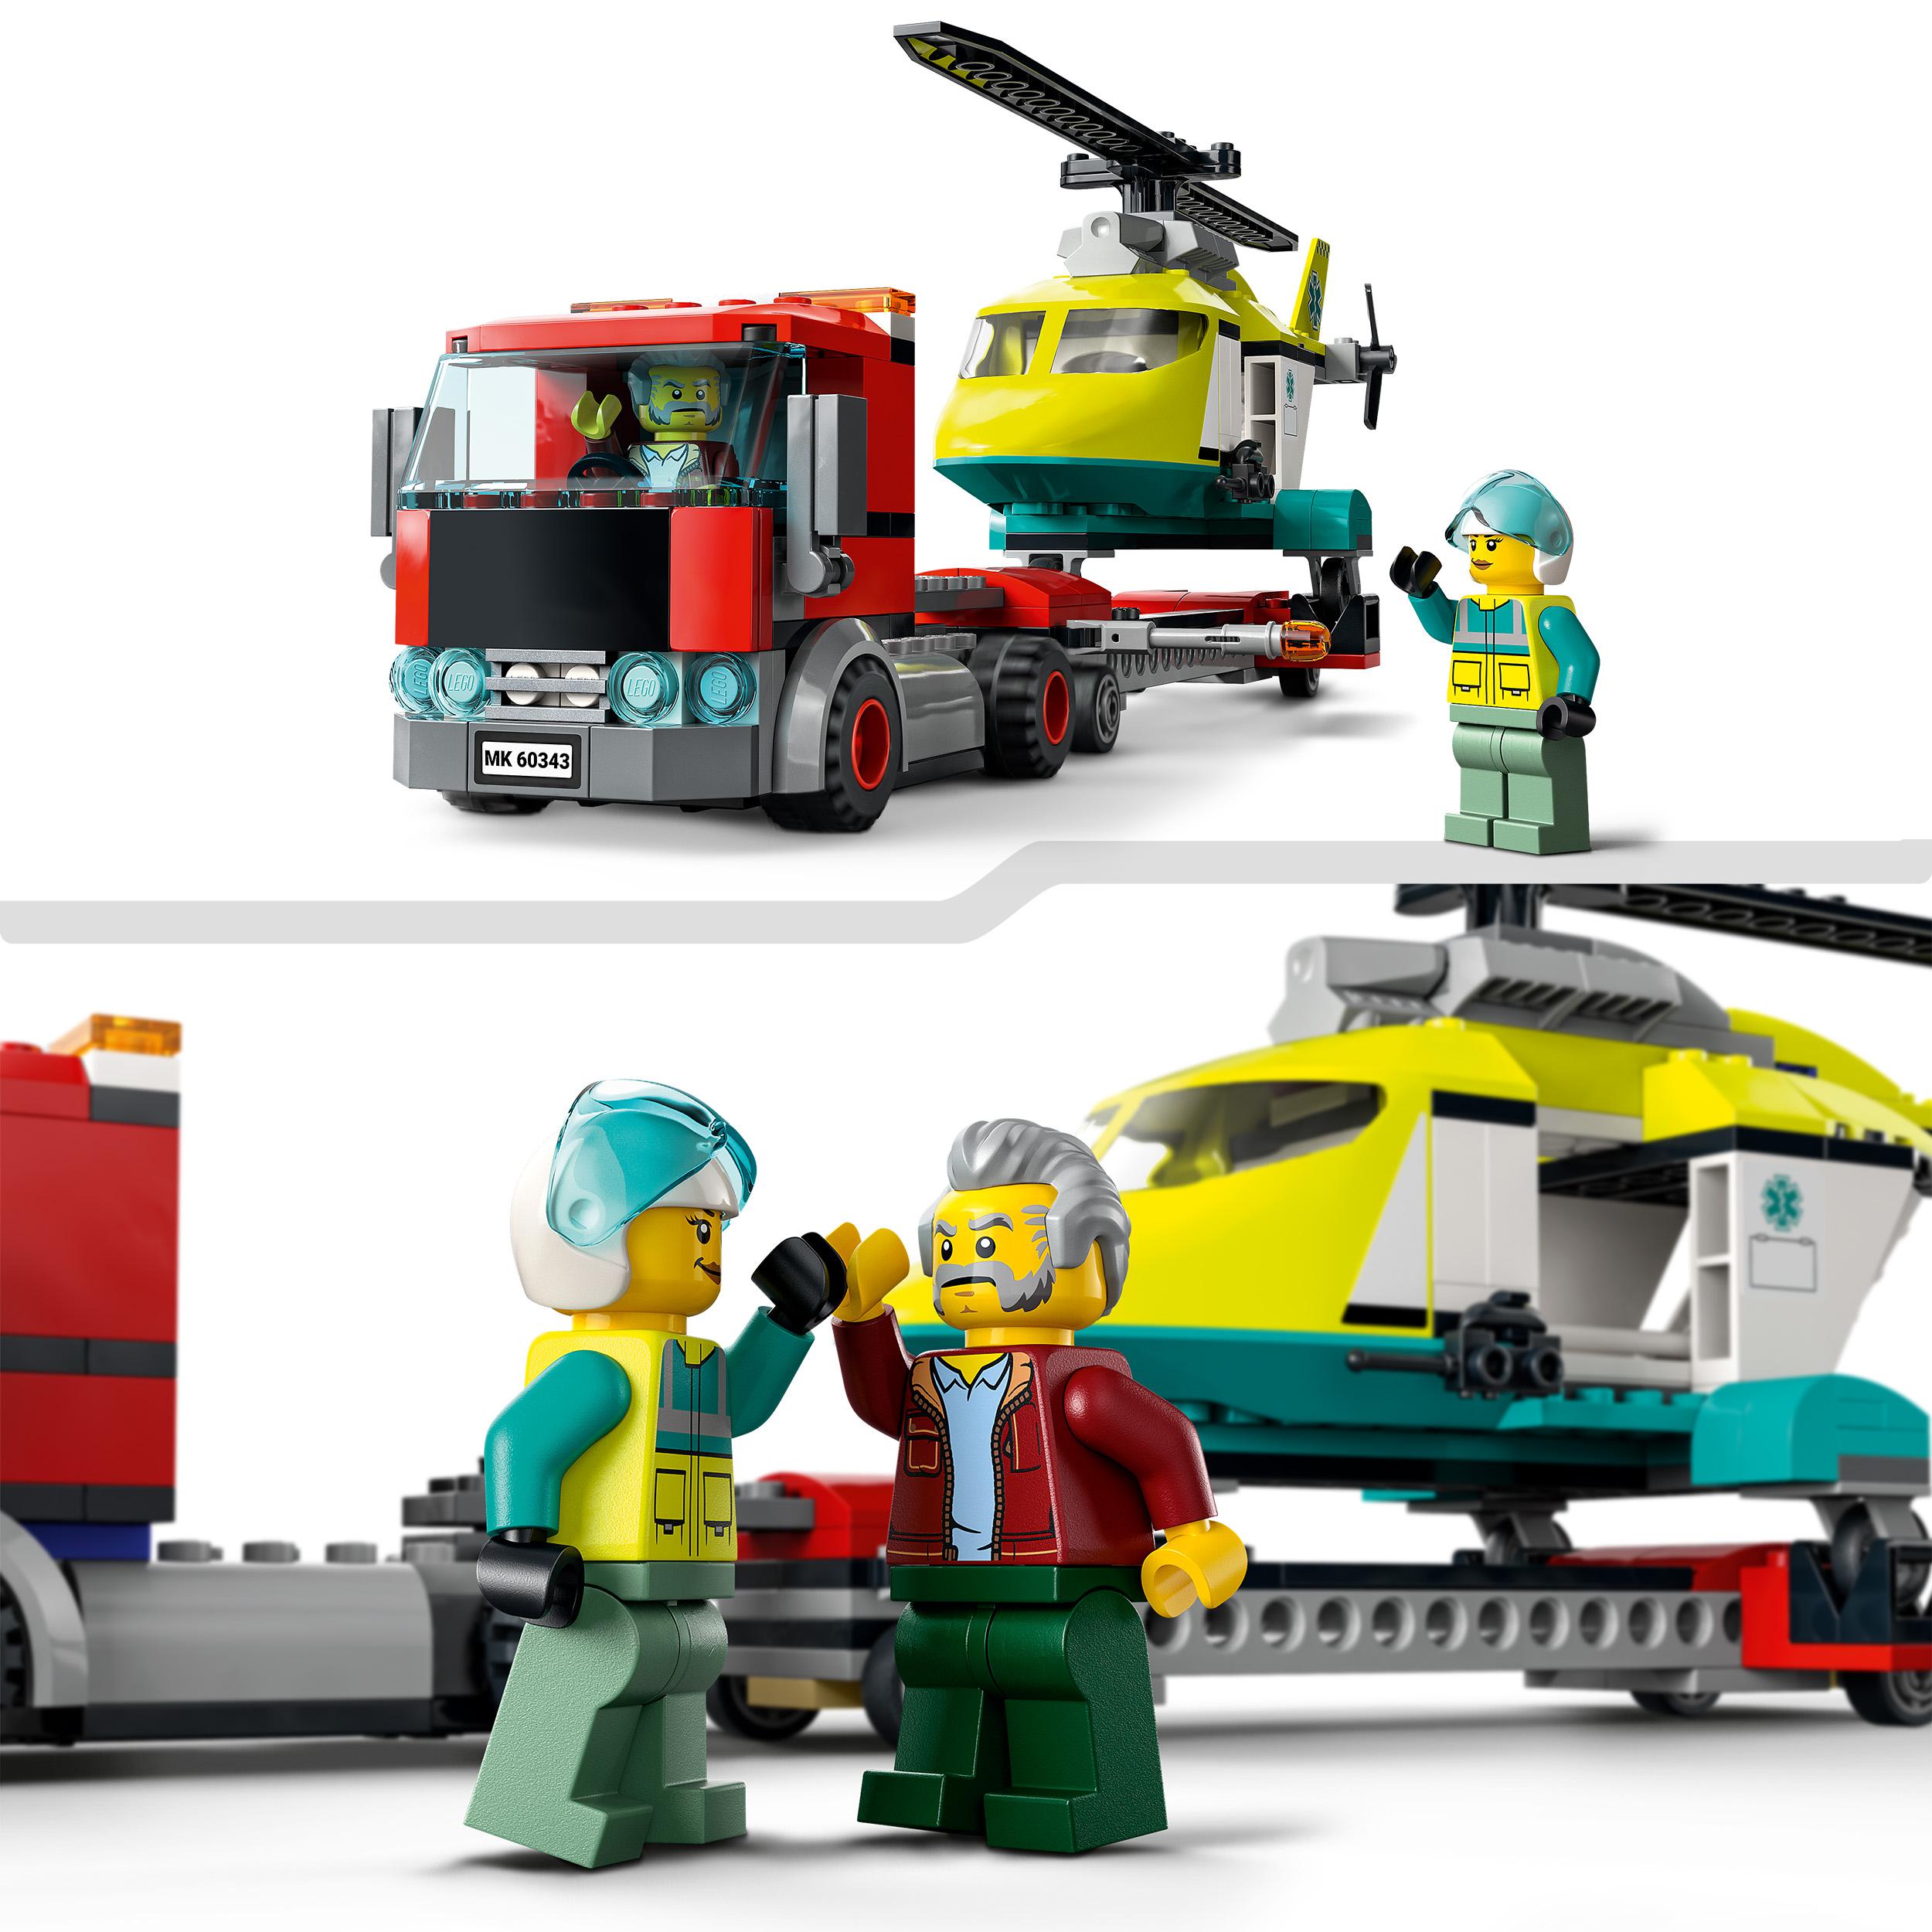 LEGO City Great Vehicles Trasportatore di Elicotteri di Salvataggio, Camion Gioc 60343, , large